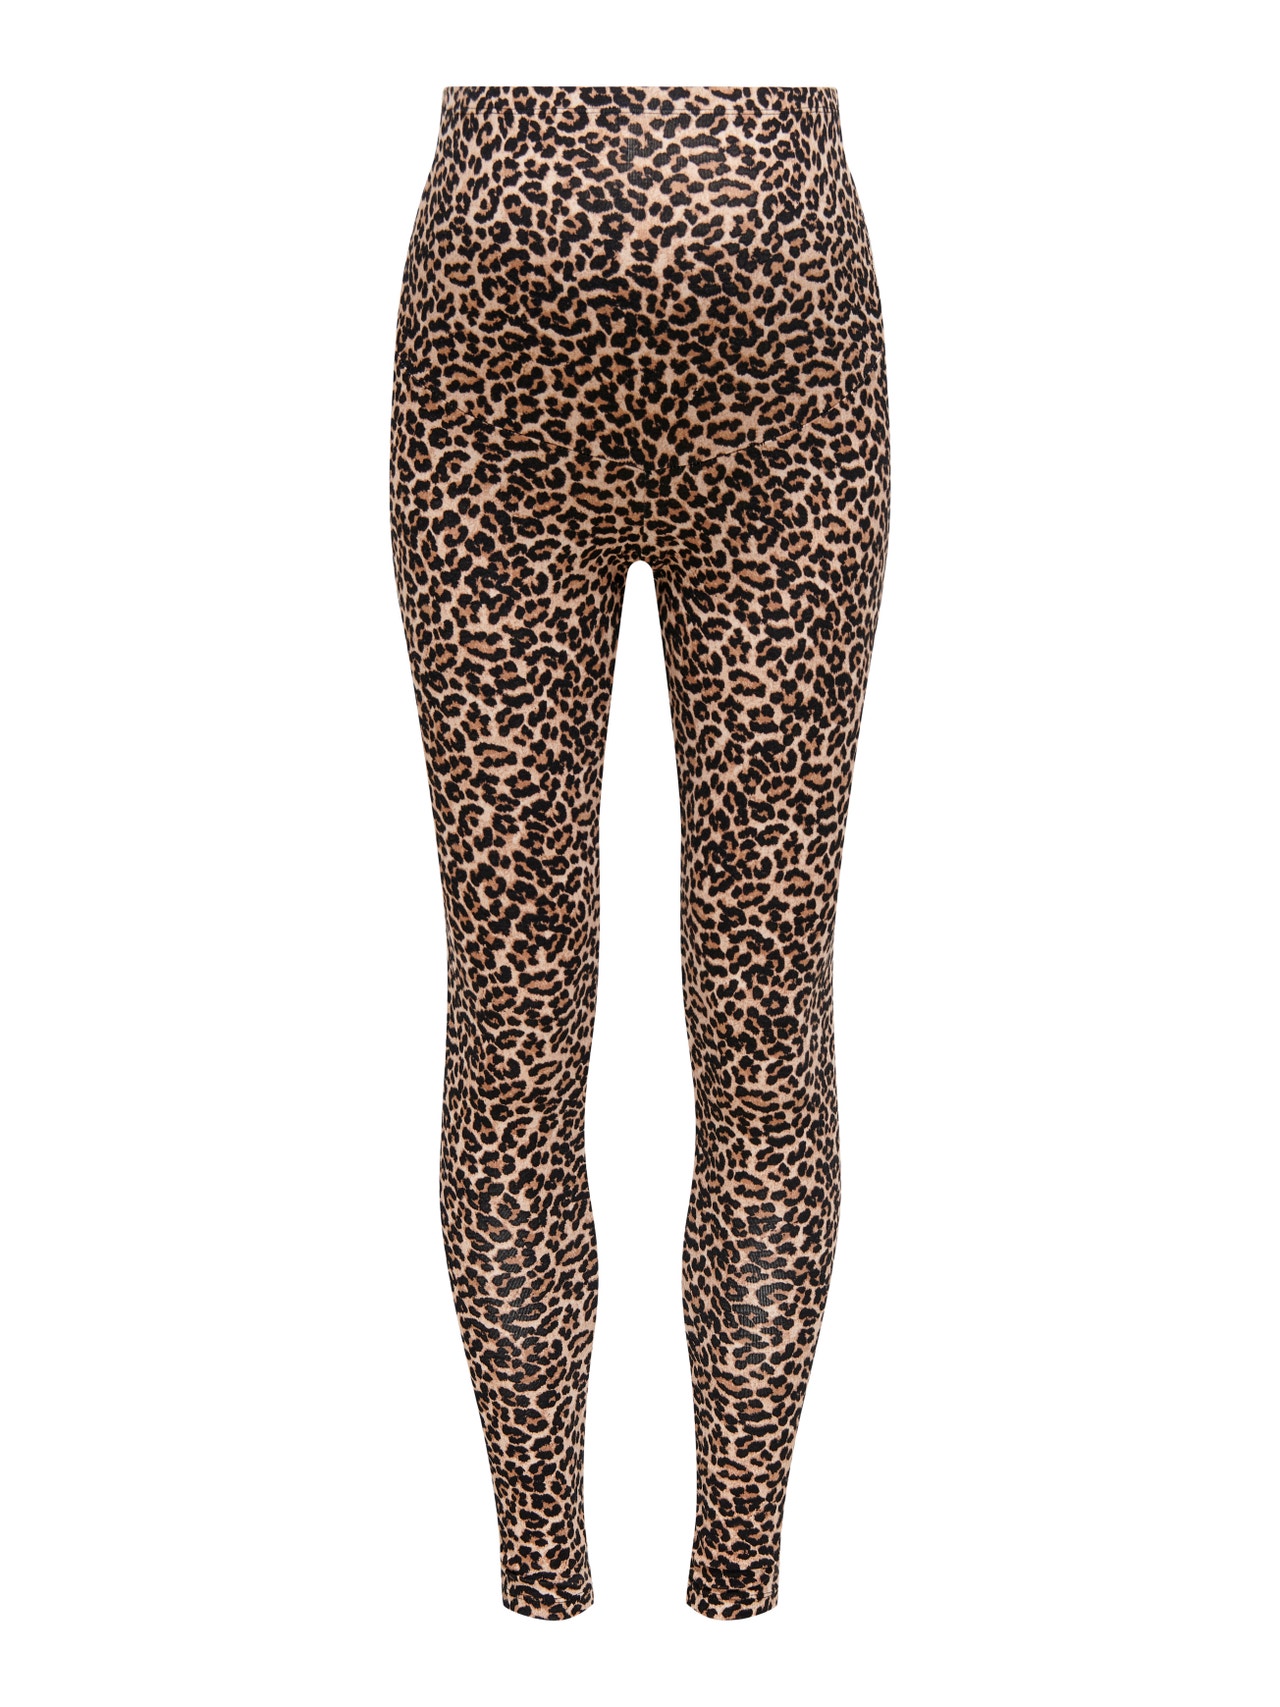 Mama leopard printed Leggings